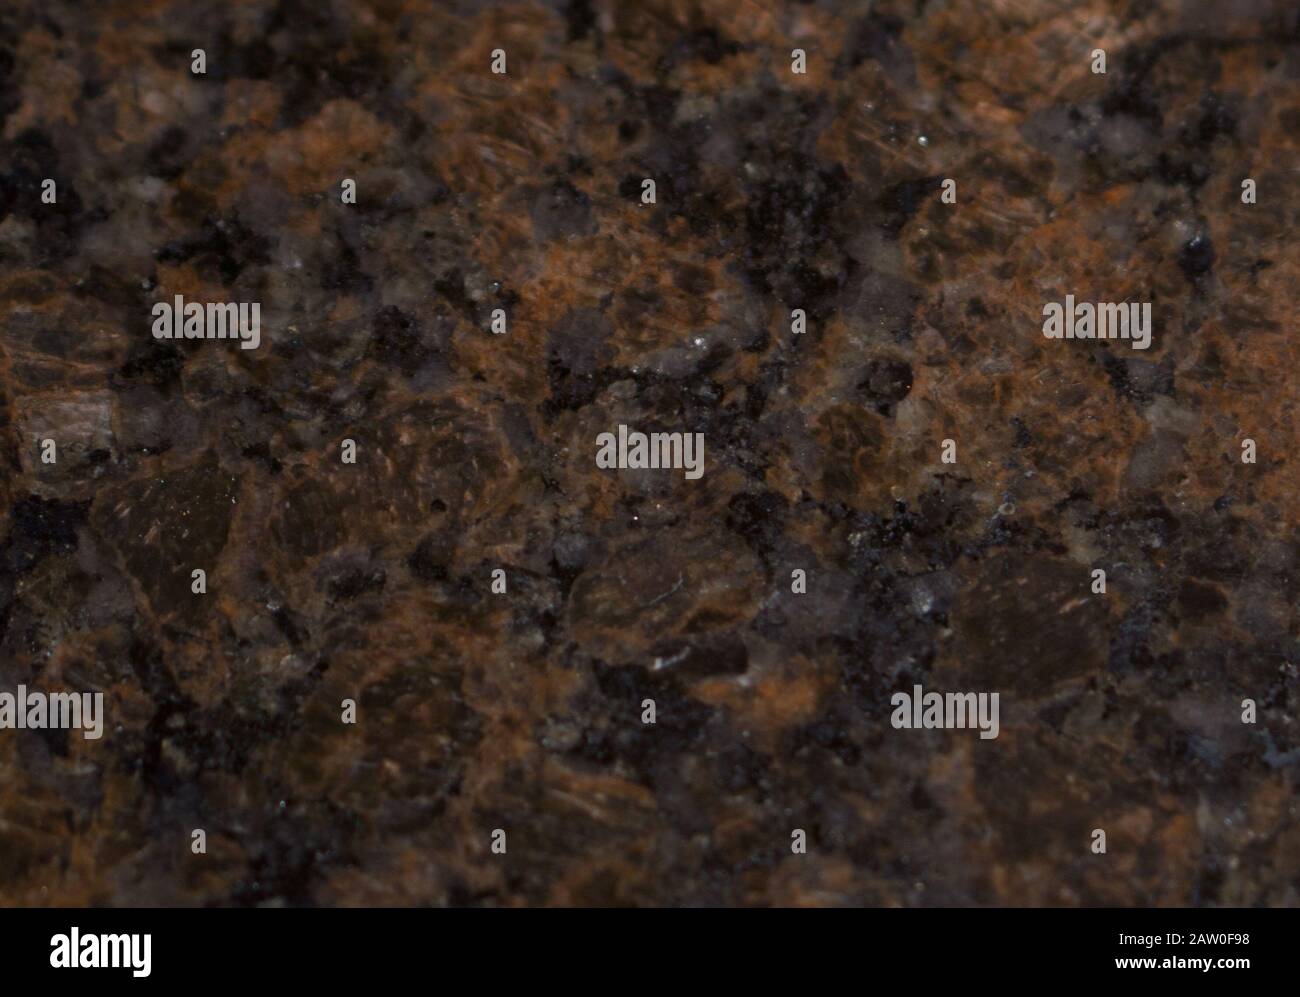 Materialtextur aus dunkelbraunem Marmor, nützlich als Hintergrund für Designarbeiten Stockfoto